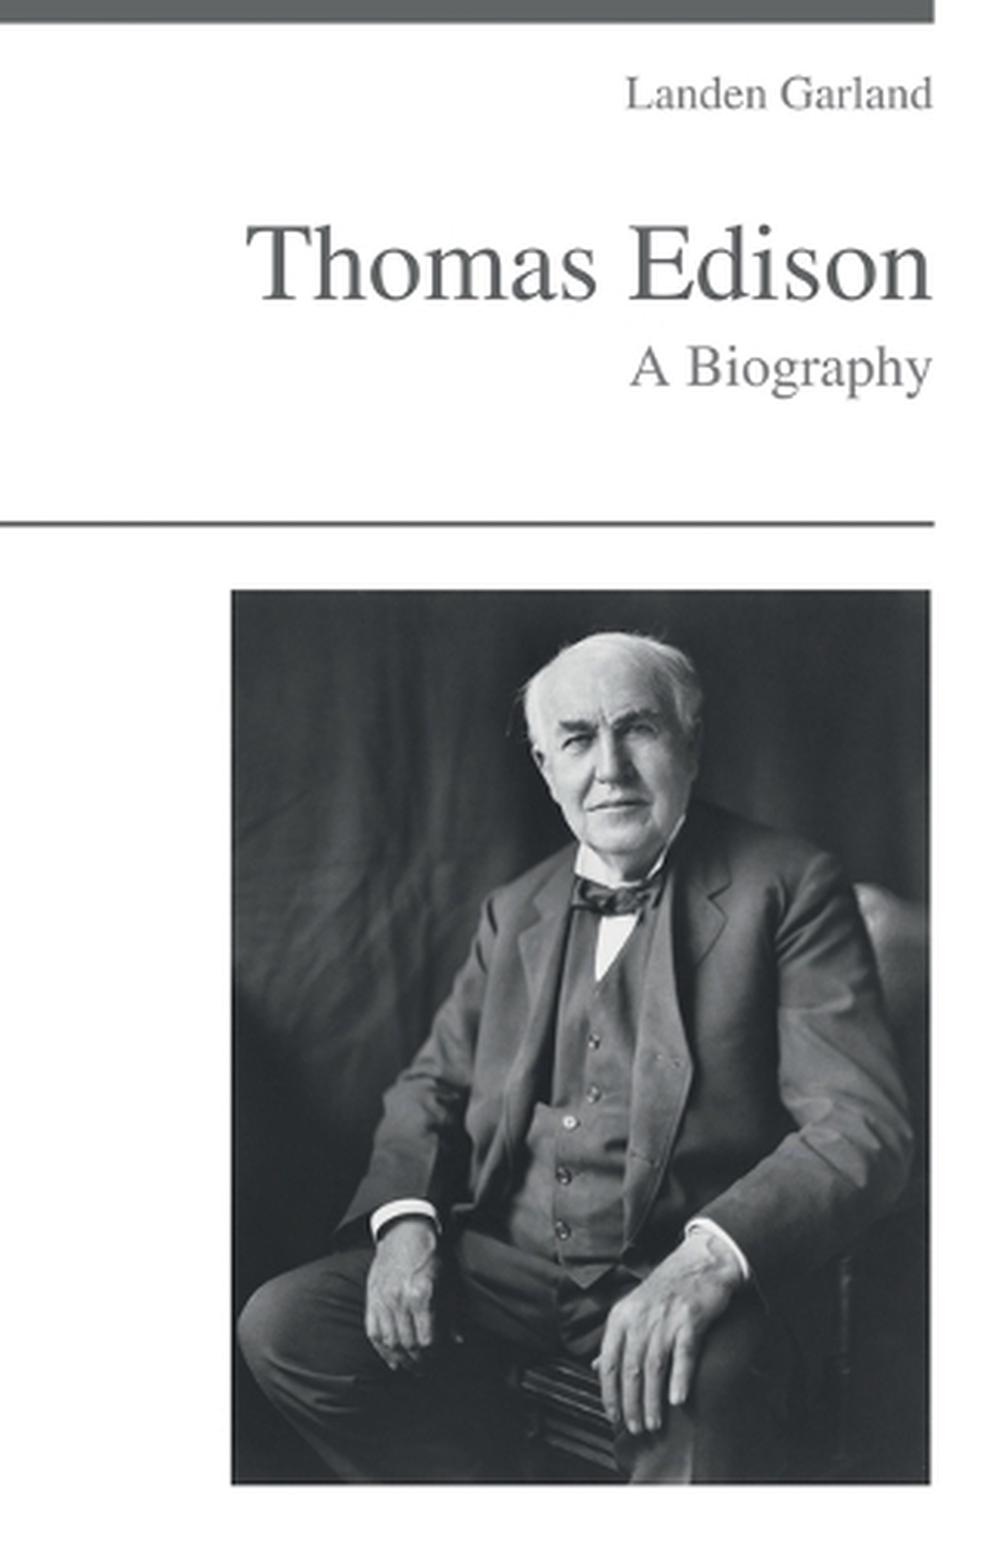 thomas edison biography pdf free download